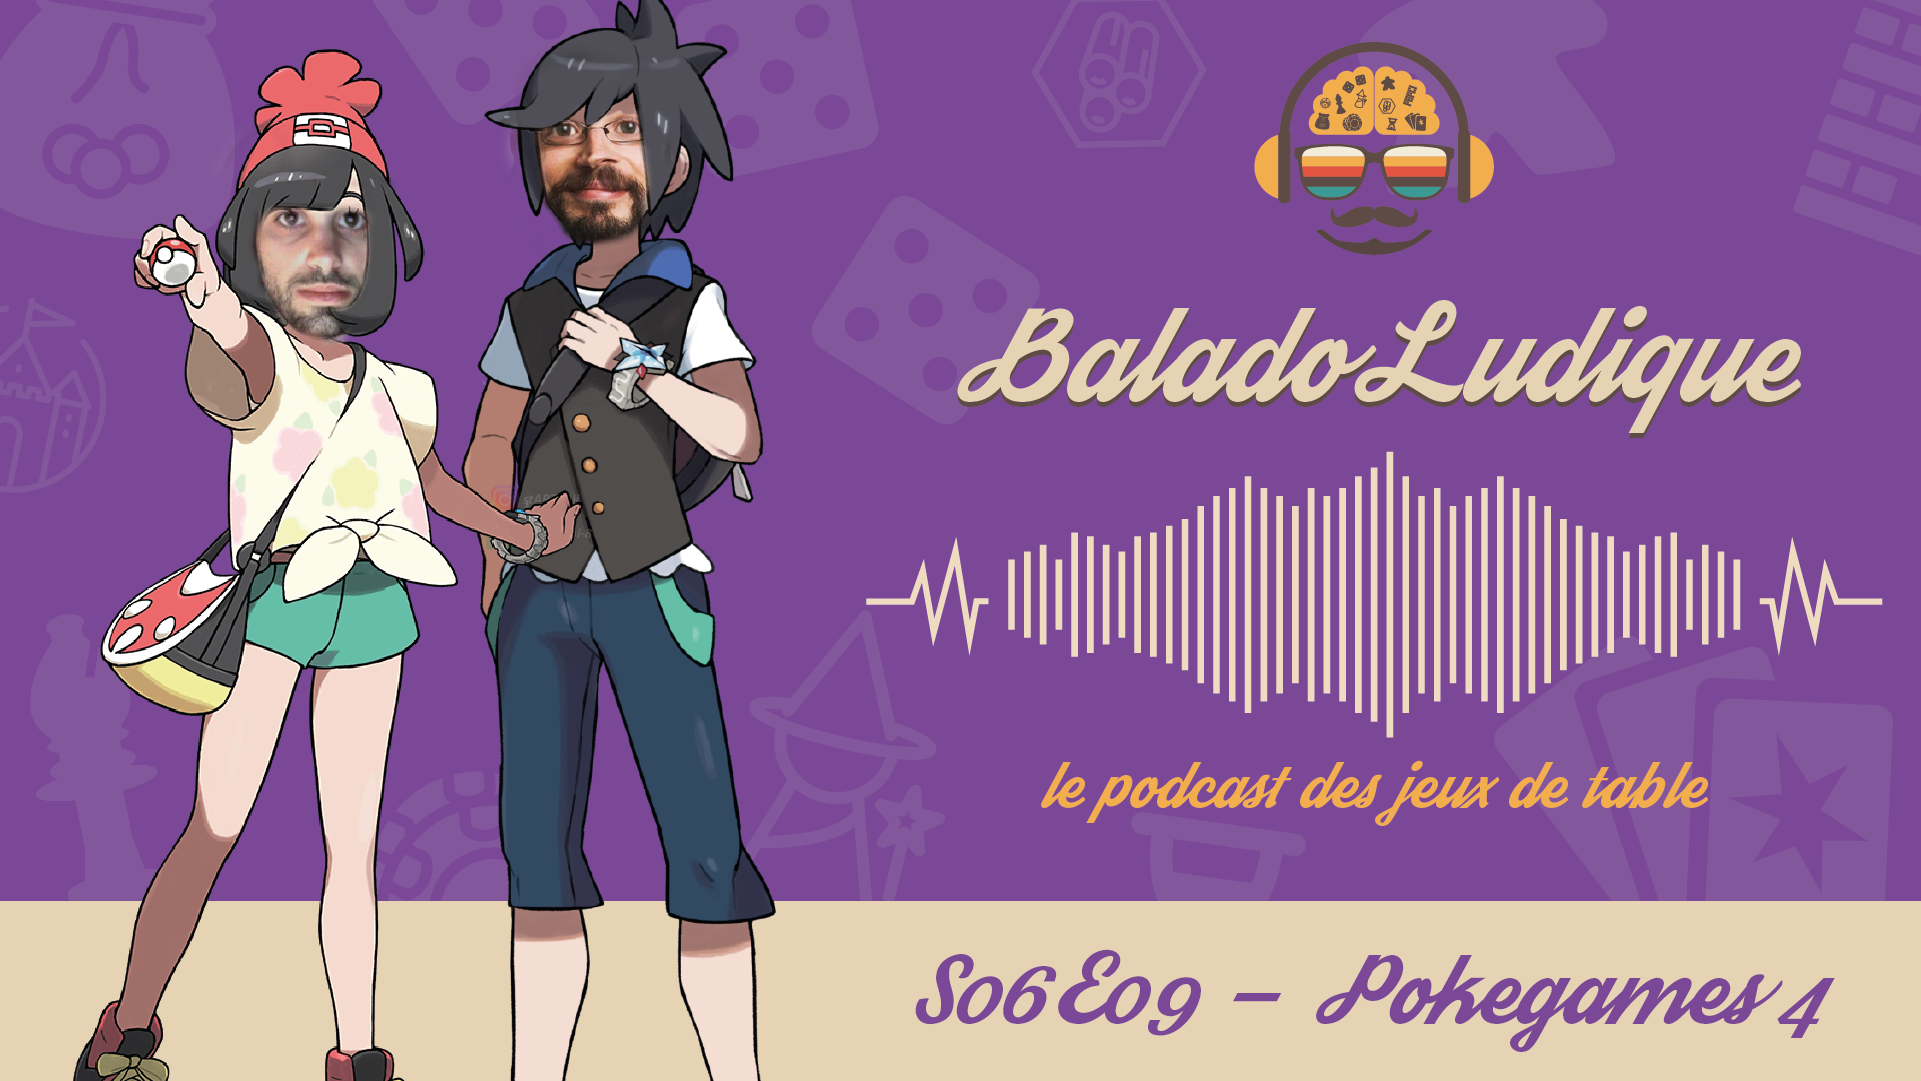 Pokegames 4 - BaladoLudique - s06-e09